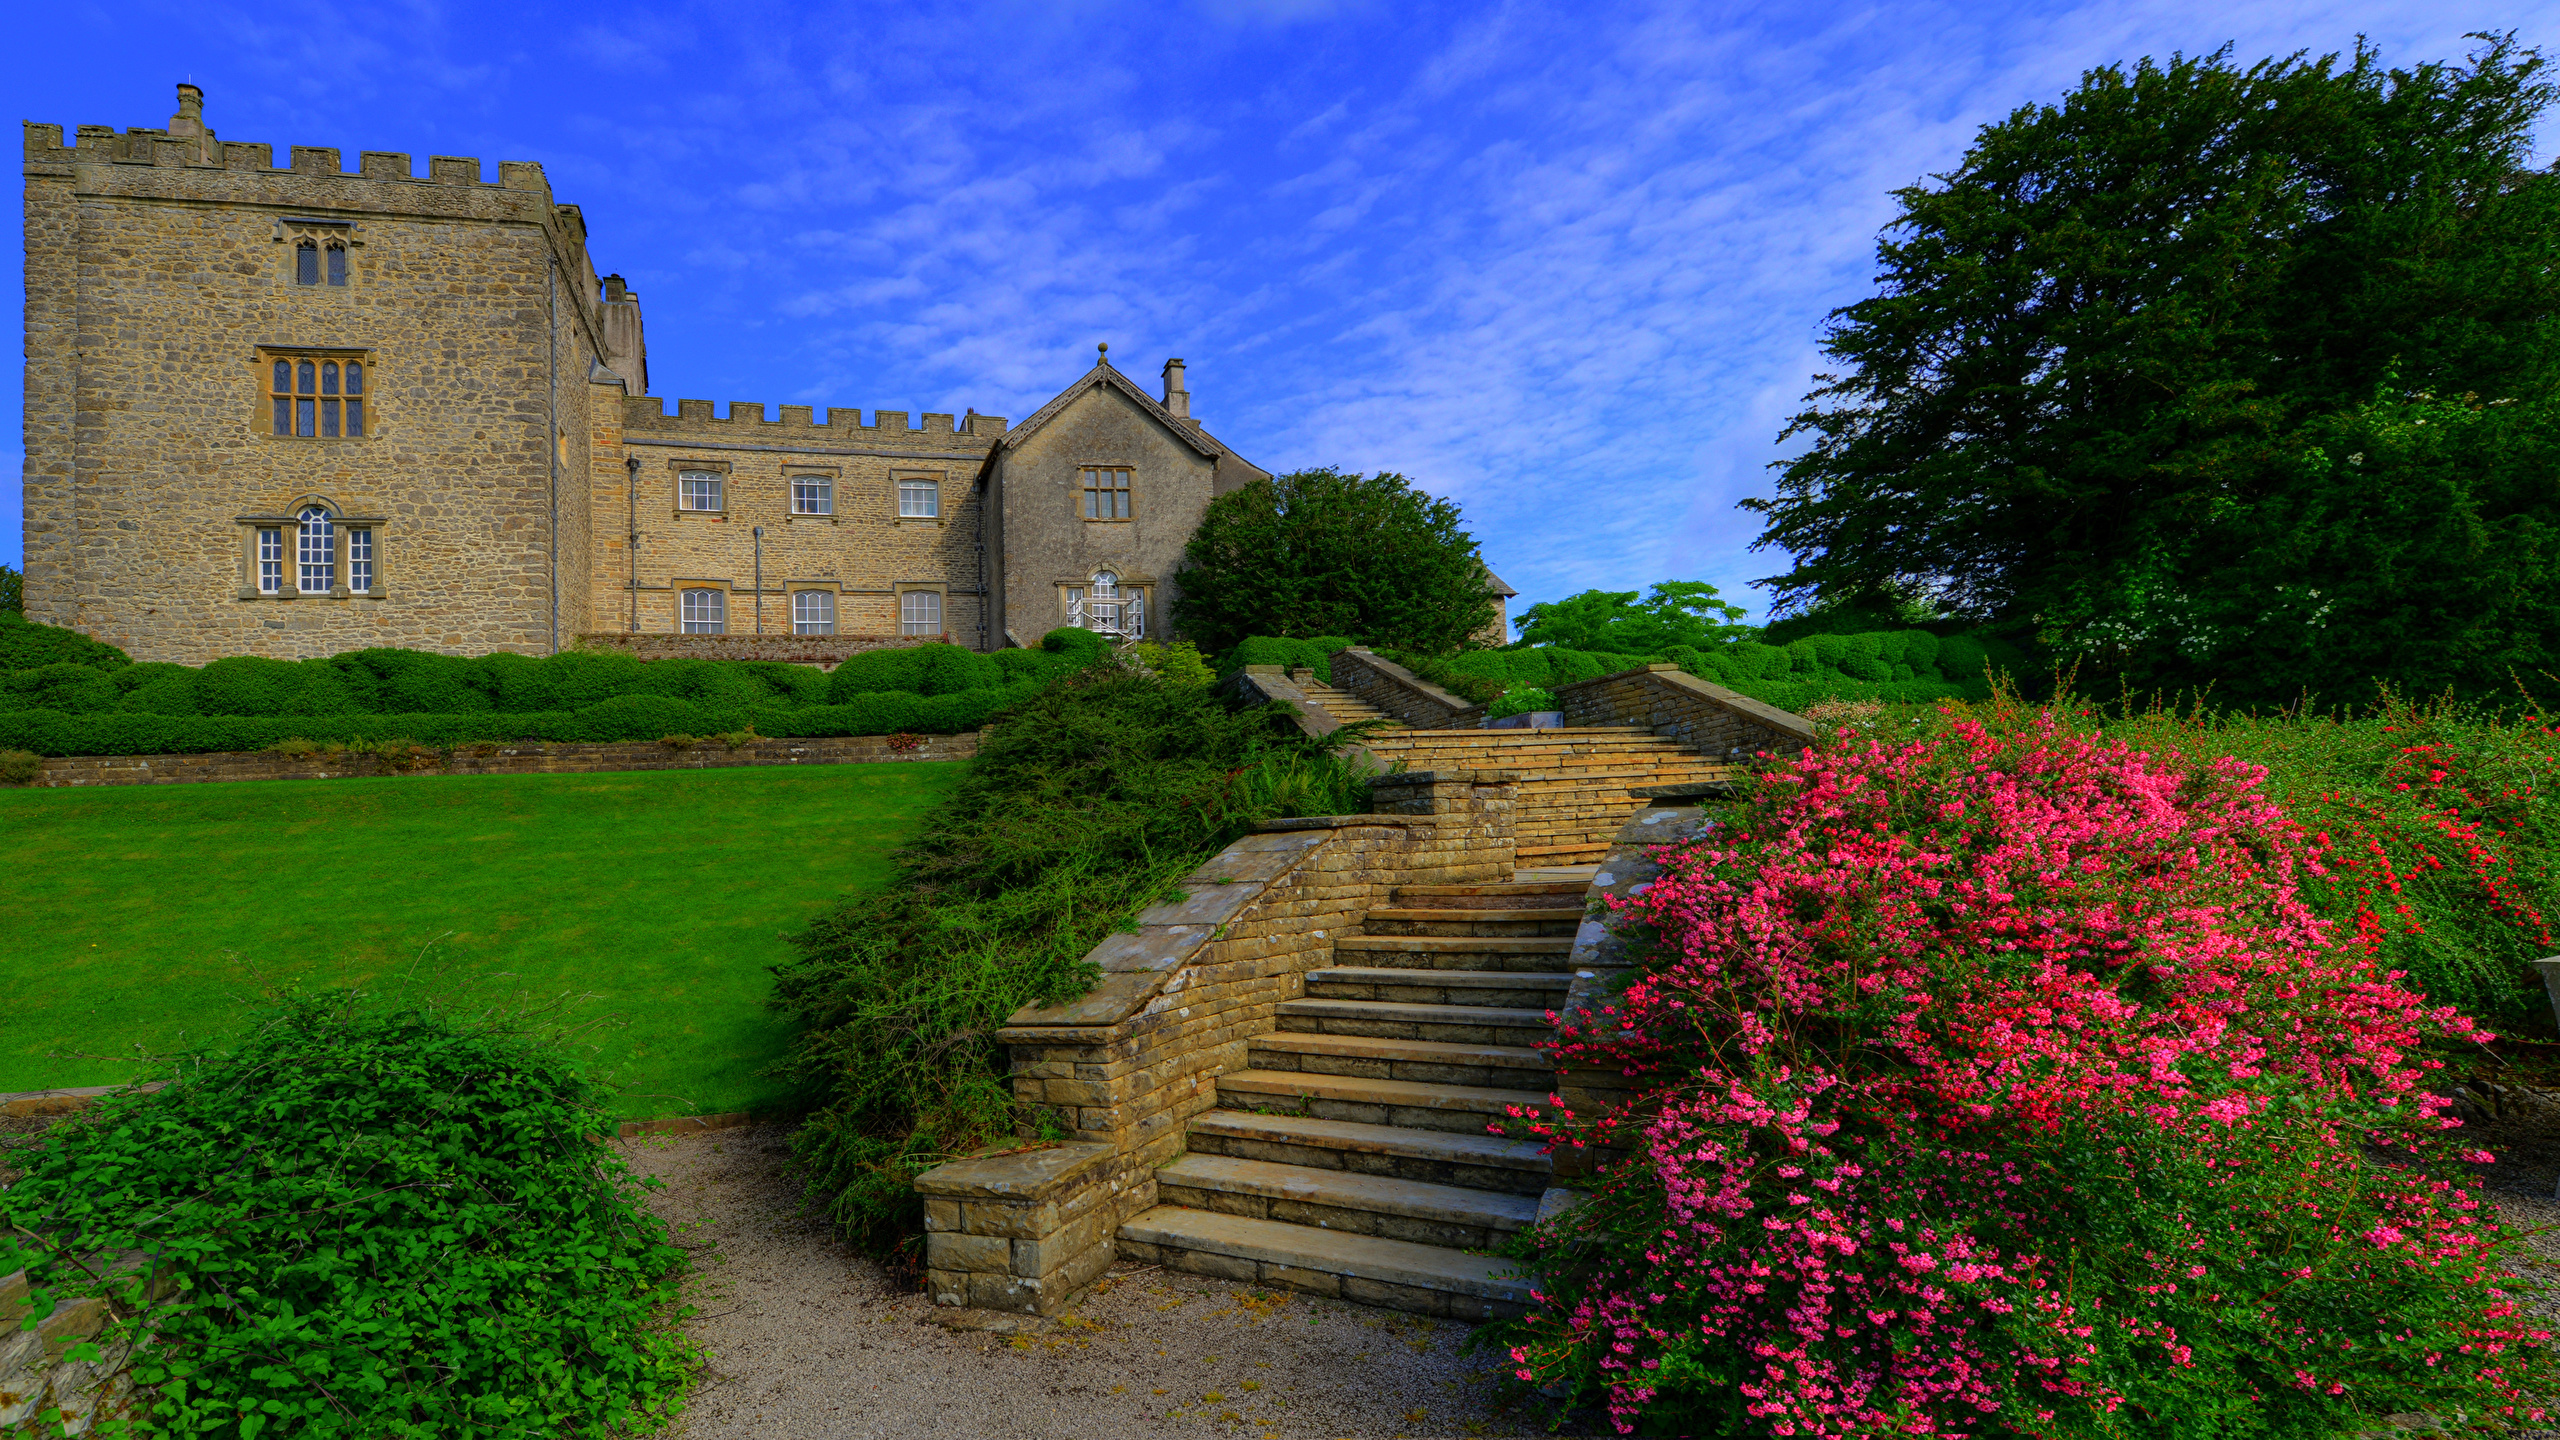 Fonds D Ecran 2560x1440 Angleterre Chateau Fort Sizergh Castle And Garden Escalier Arbrisseau Gazon Villes Telecharger Photo